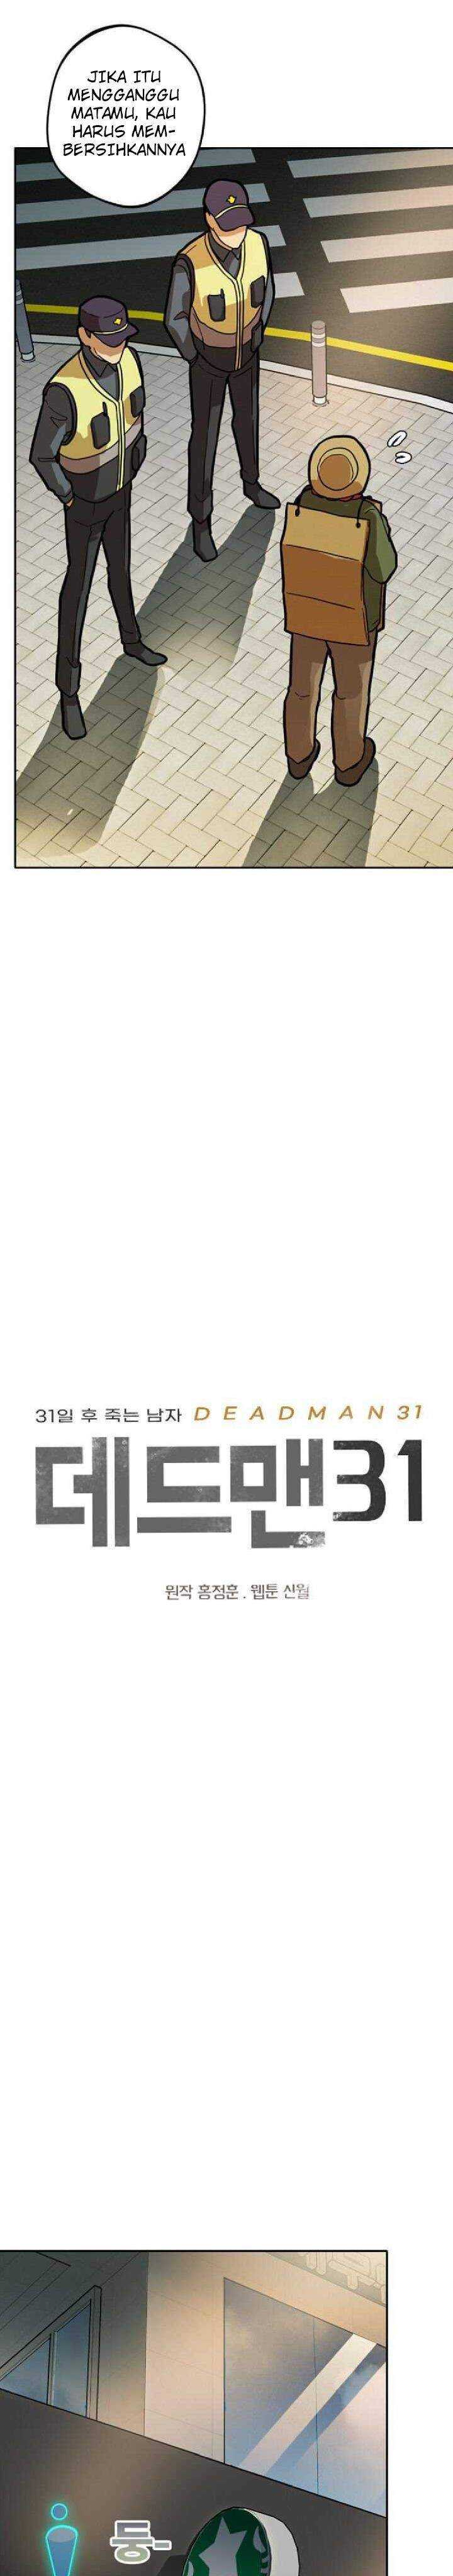 Deadman 31 Chapter 02